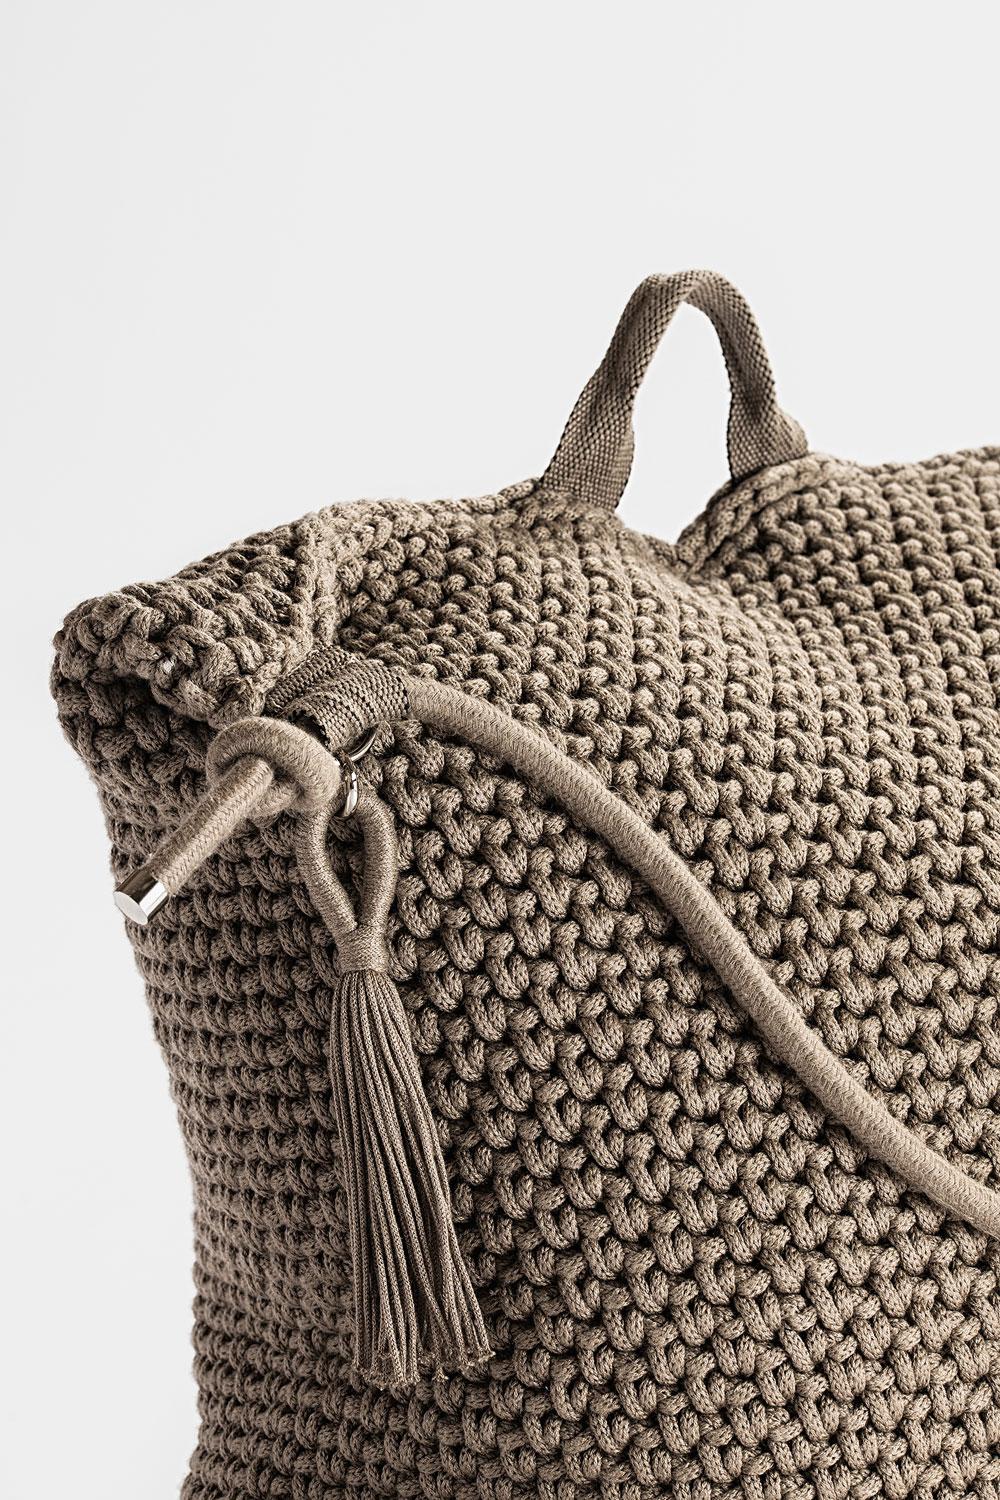 Israeli Cacao Brown Outdoor Indoor Bag Cushion Handmade Crochet in UV Protected Yarn